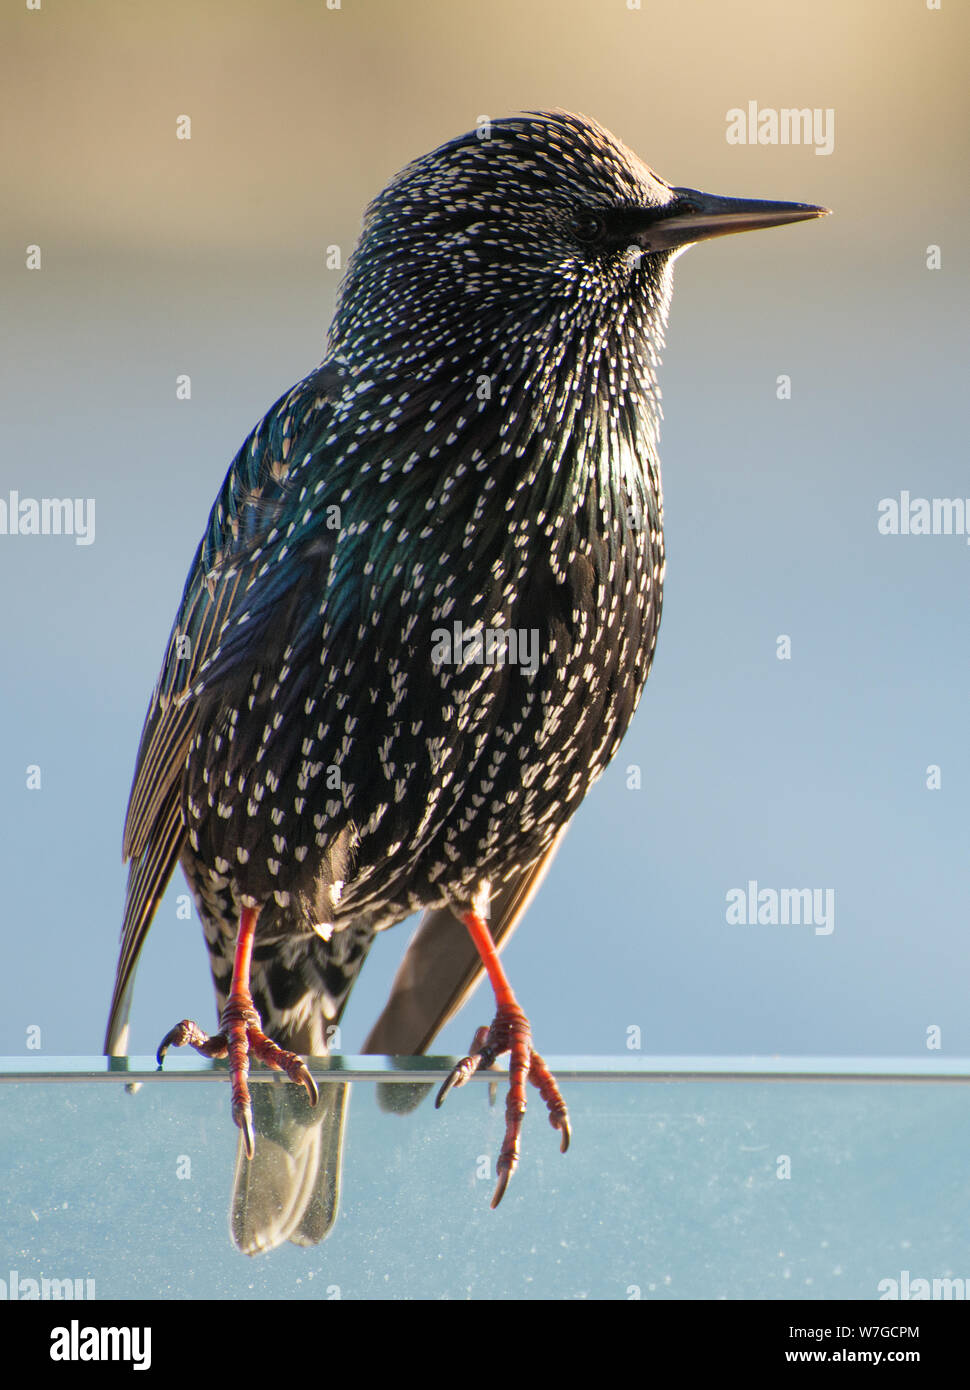 Starling in Nahaufnahme von der späten Nachmittagsonne angezündet, die die Irisenz seines Gefieders zeigt Stockfoto